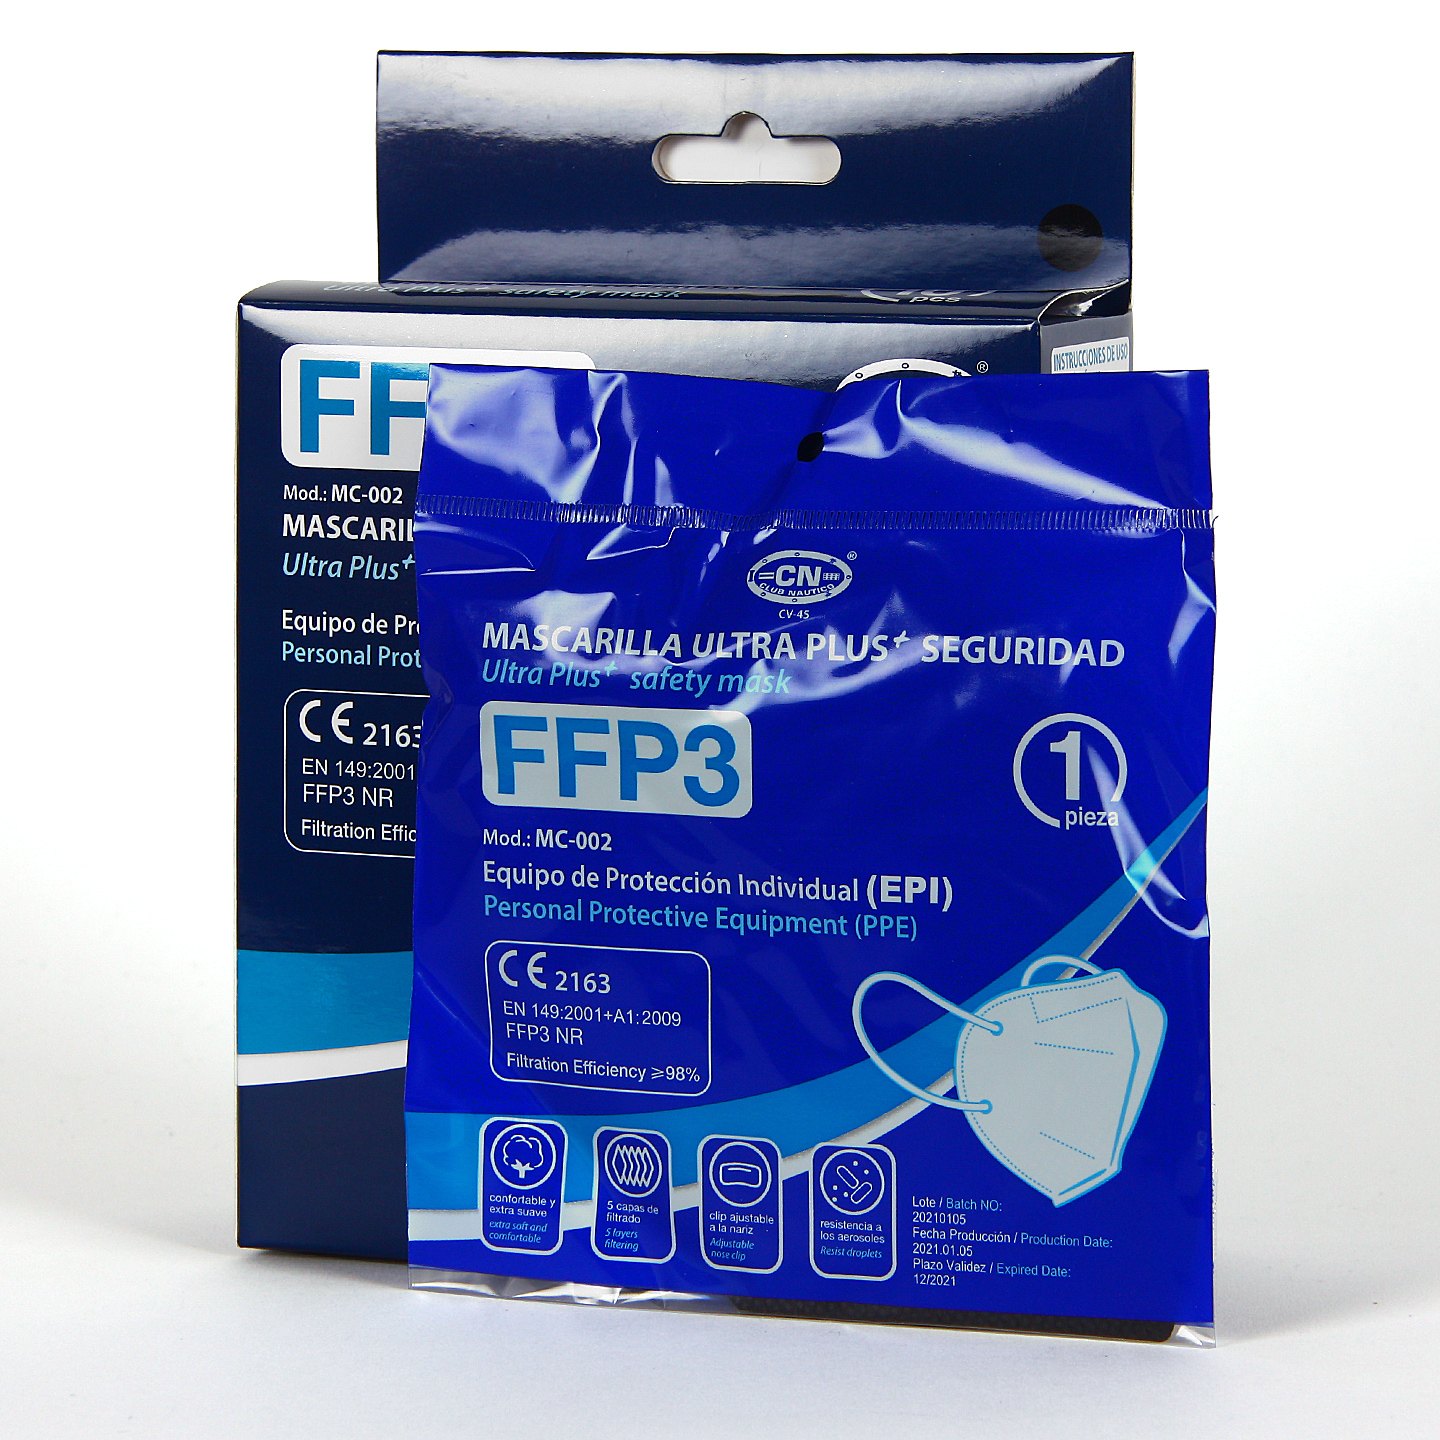 Mascarillas FFP3 con un confortable sellado nasal.